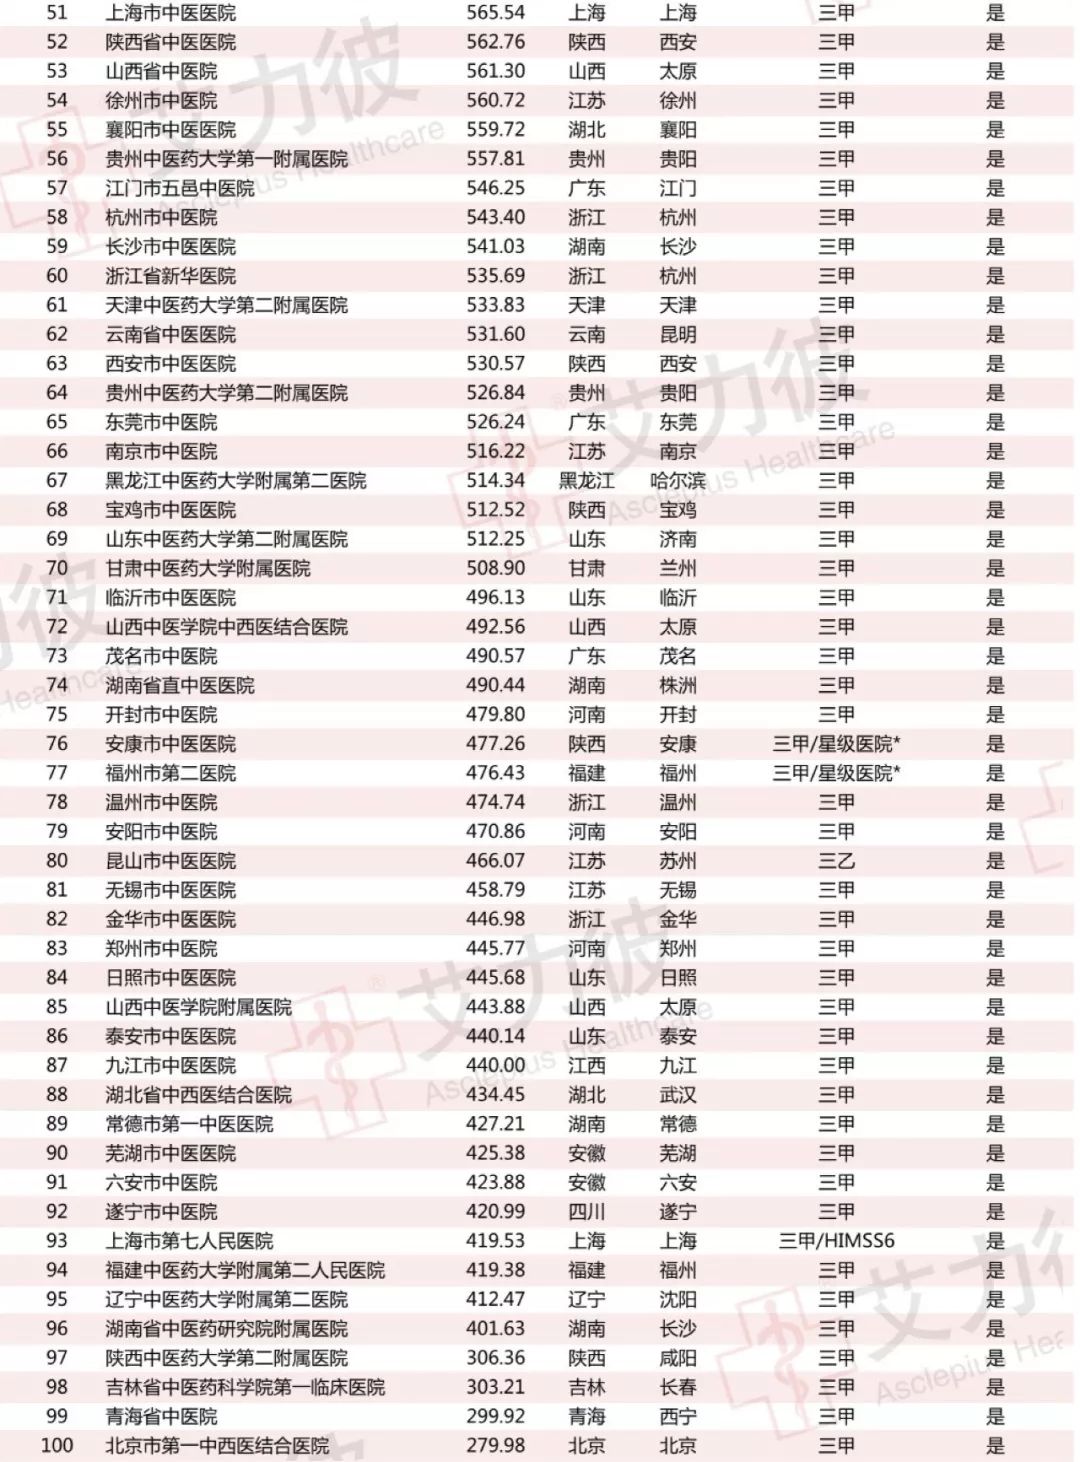 中医排行榜_河北省中医医院微信影响力排行榜月榜(2021年4月)榜单来袭